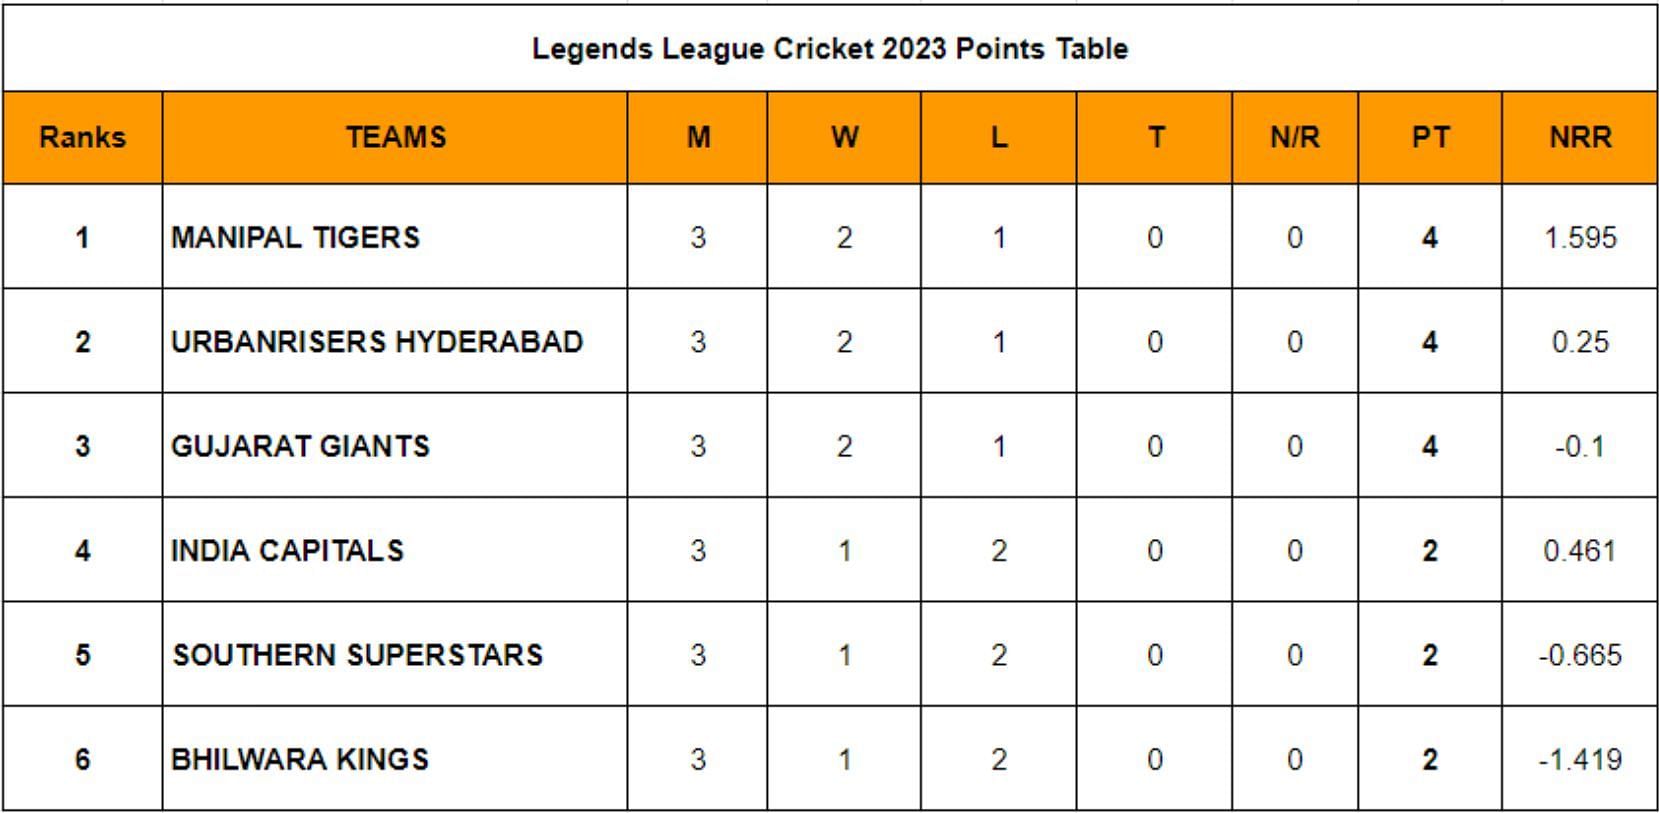 Legends League Cricket 2023 Points Table